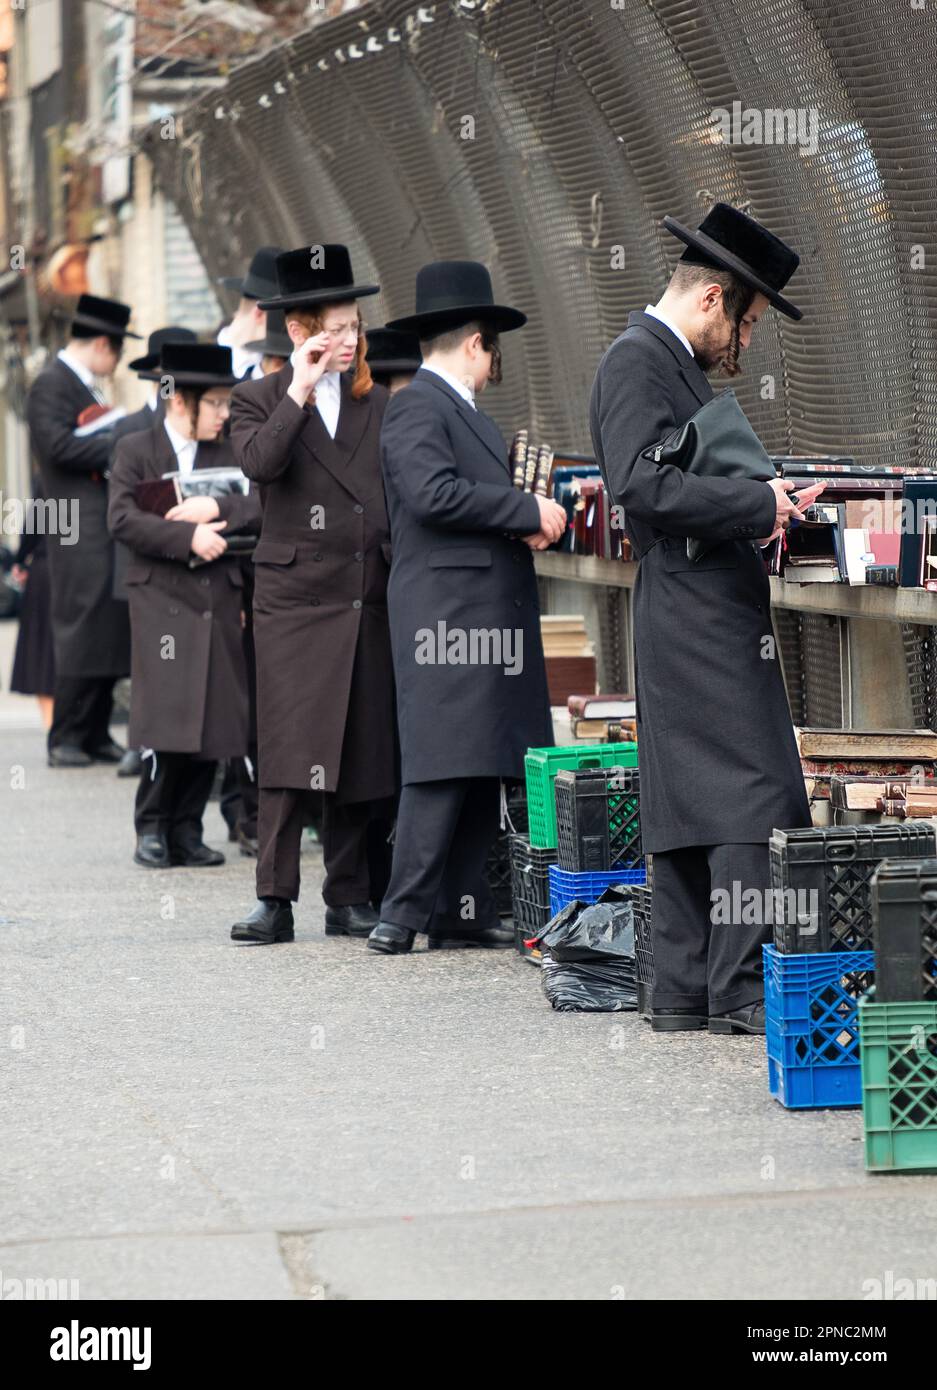 Chassidische jüdische Männer unterschiedlichen Alters versenden religiöse Bücher an einem Stand auf der Straße mit Blick auf die BQE in Williamsburg, Brooklyn, New York. Stockfoto